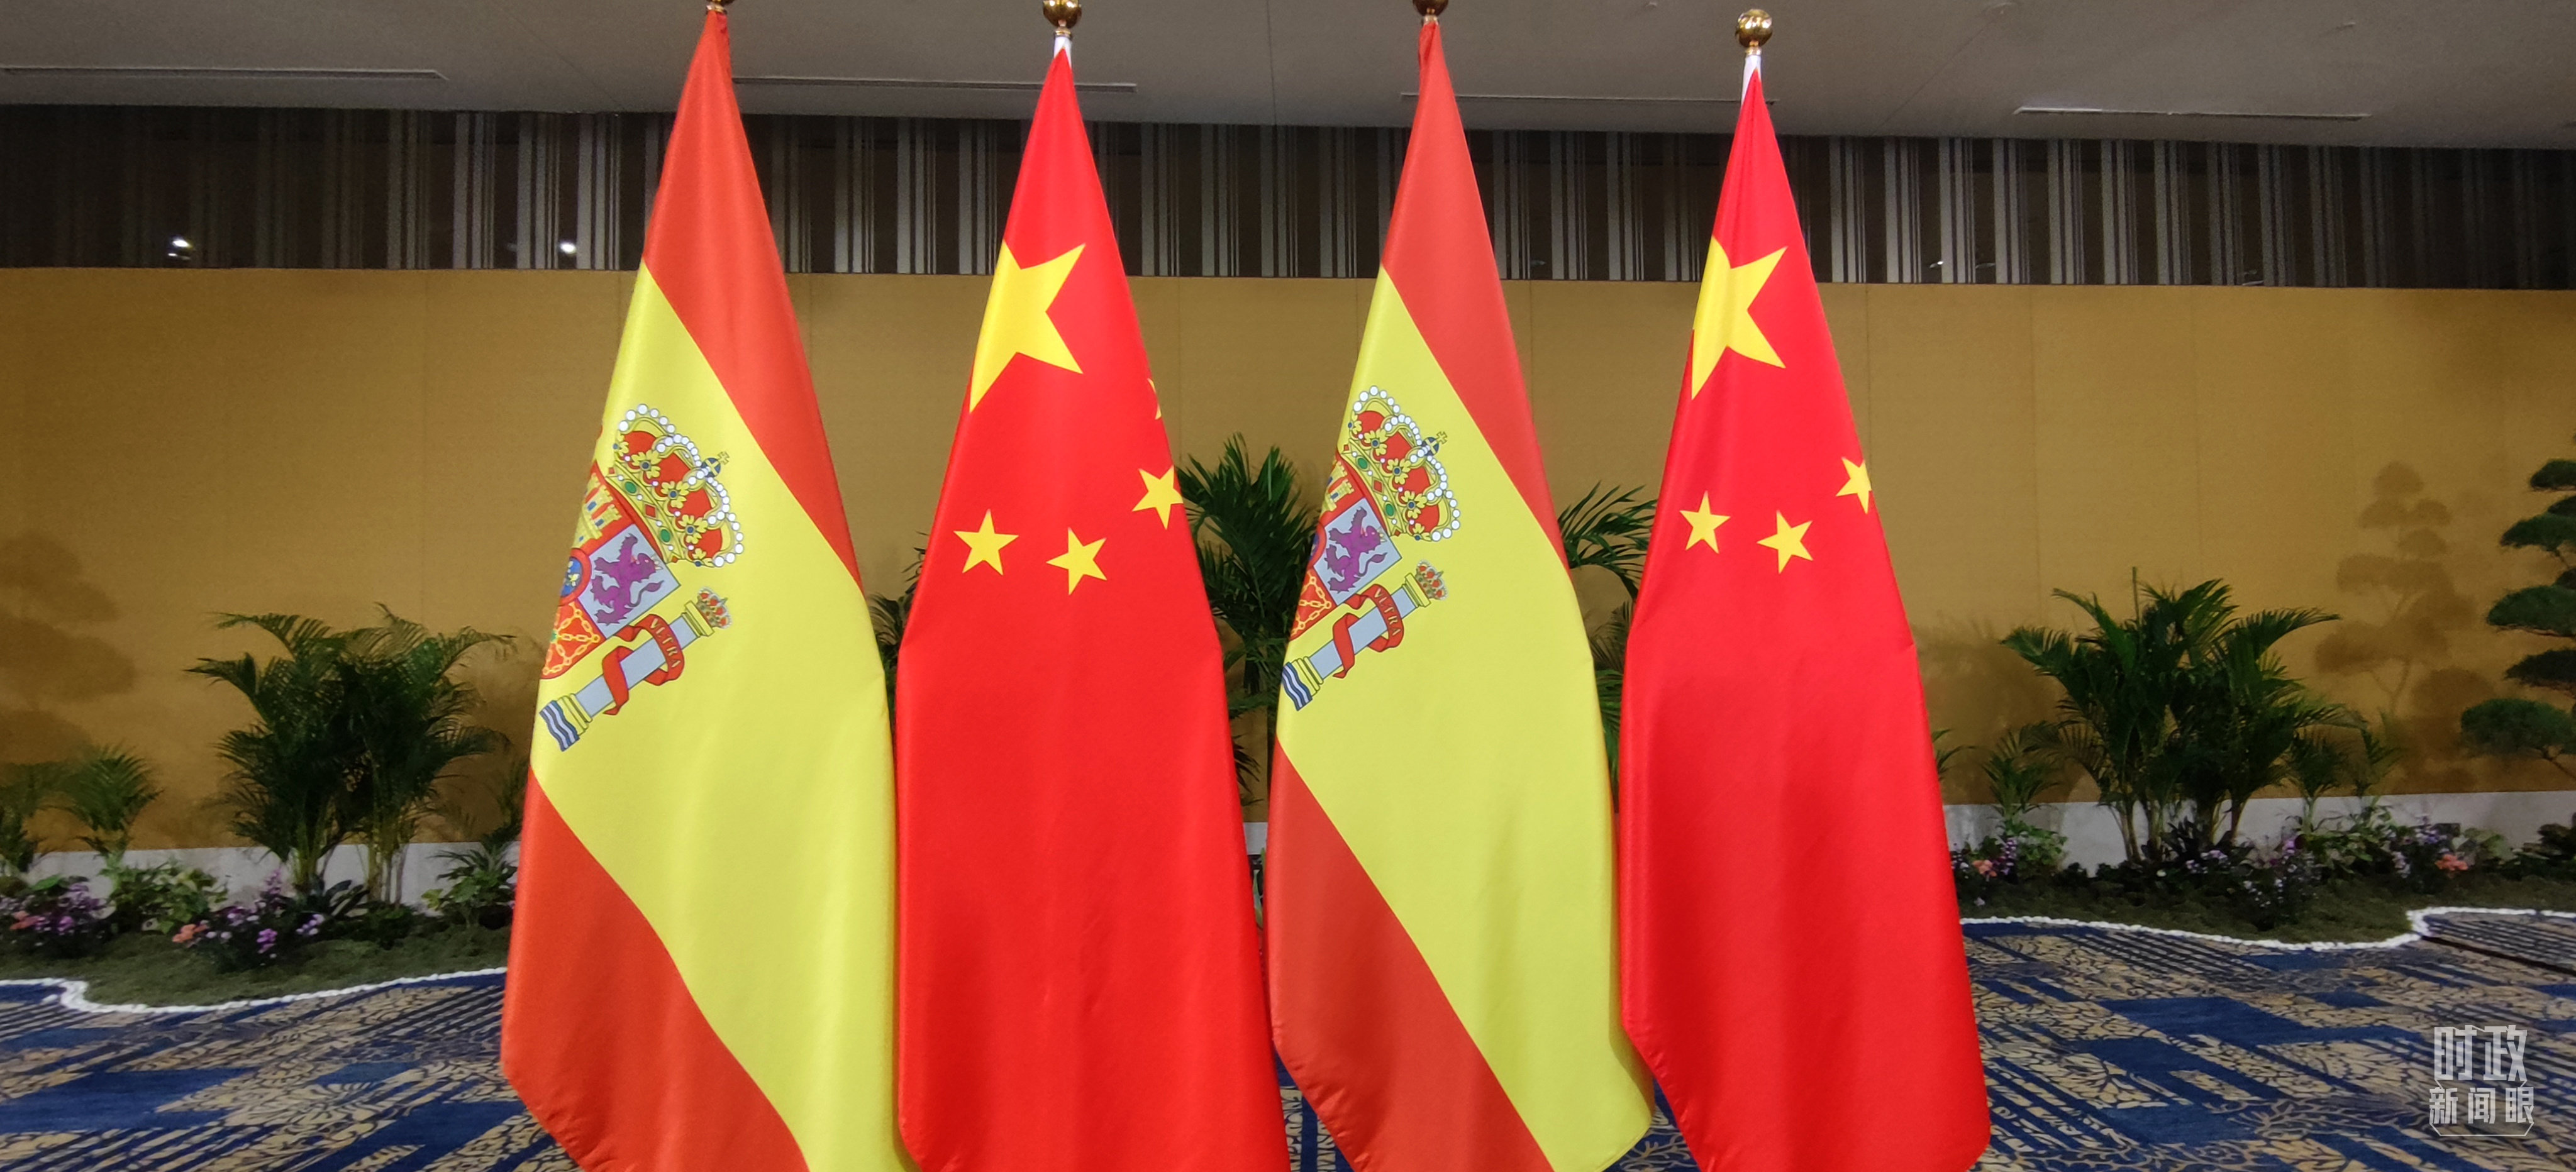 △会见现场的中国和西班牙两国国旗。（总台央视记者耿小龙拍摄）